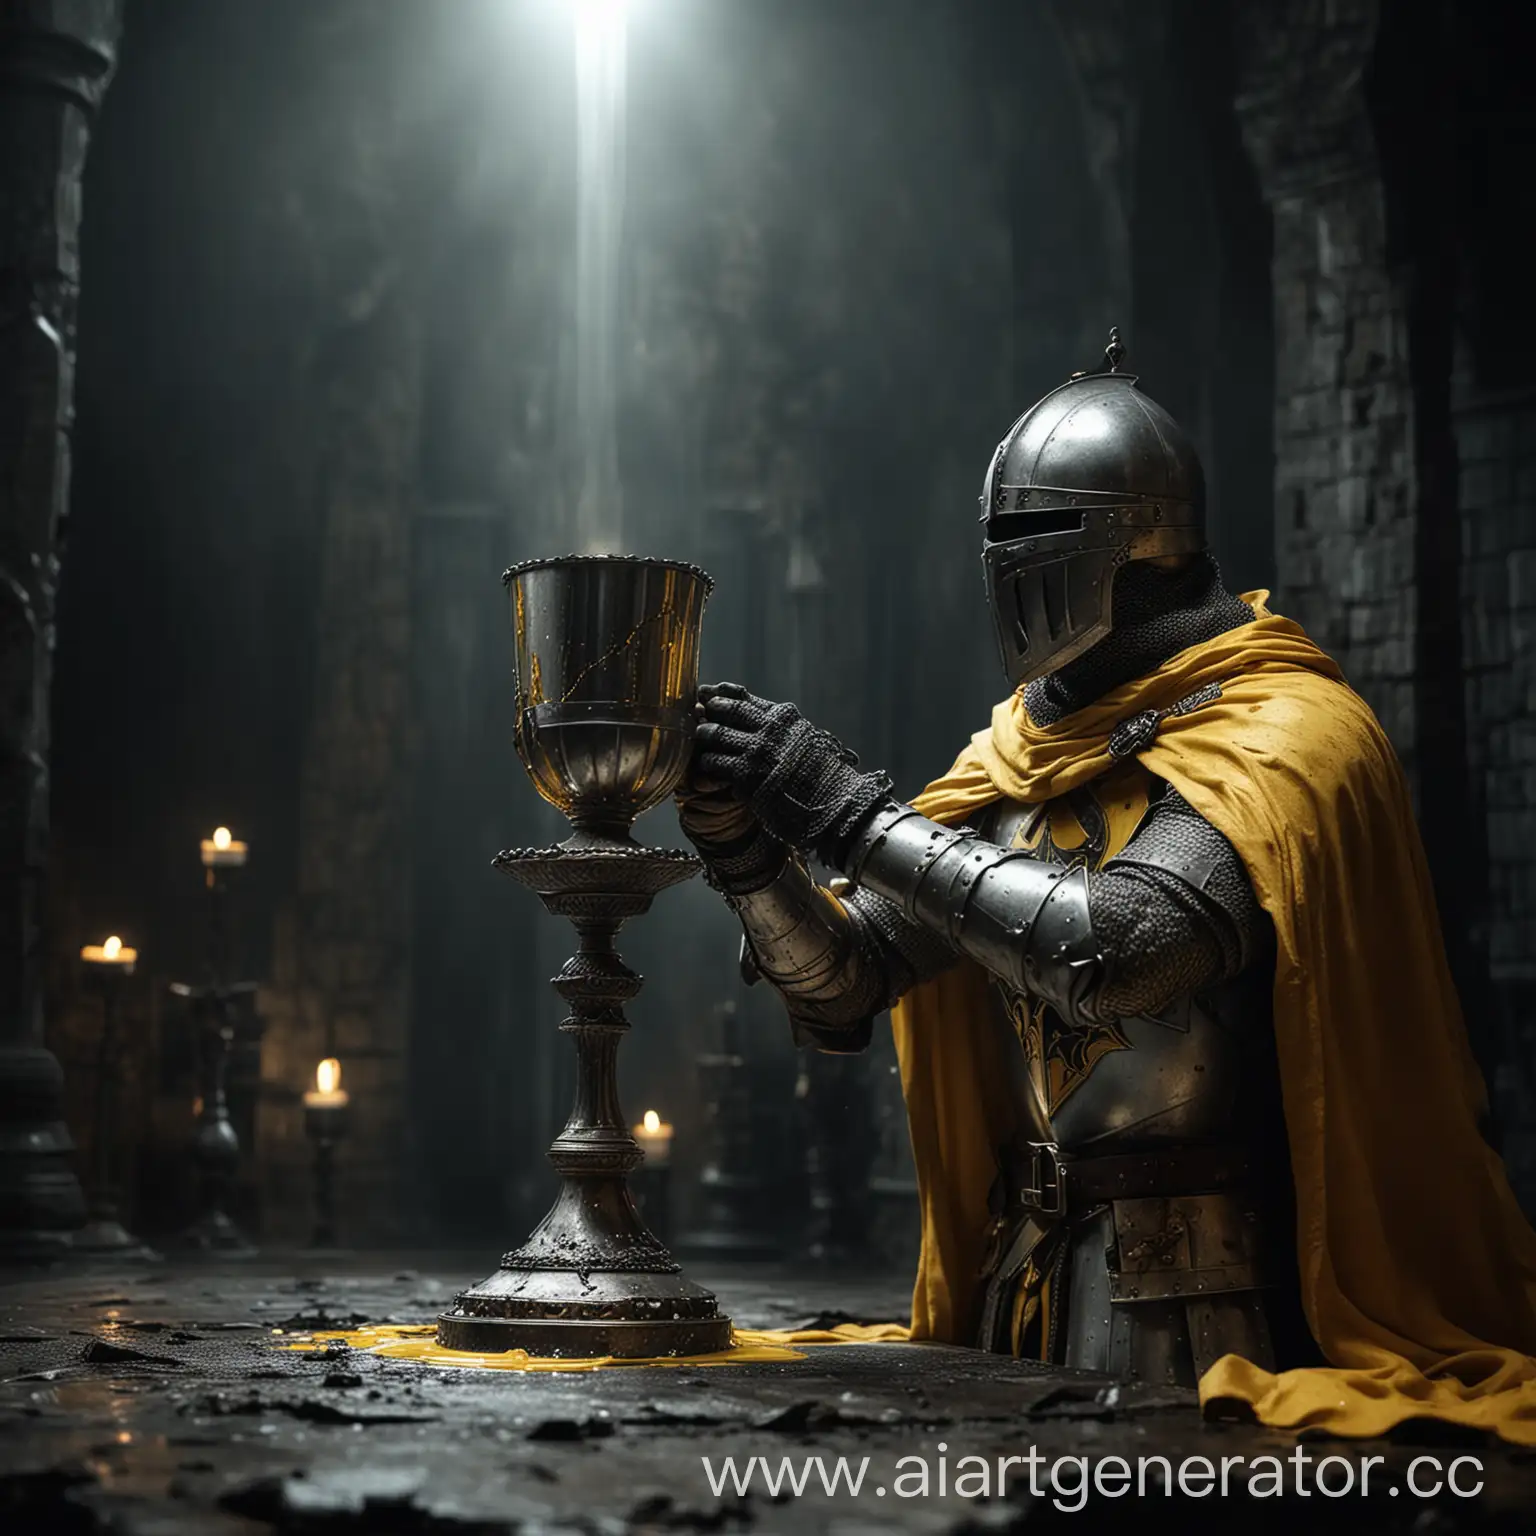 Рыцарь-крестоносец пьёт из серебряного священного кубка желтую жидкость, мрачная атмосфера